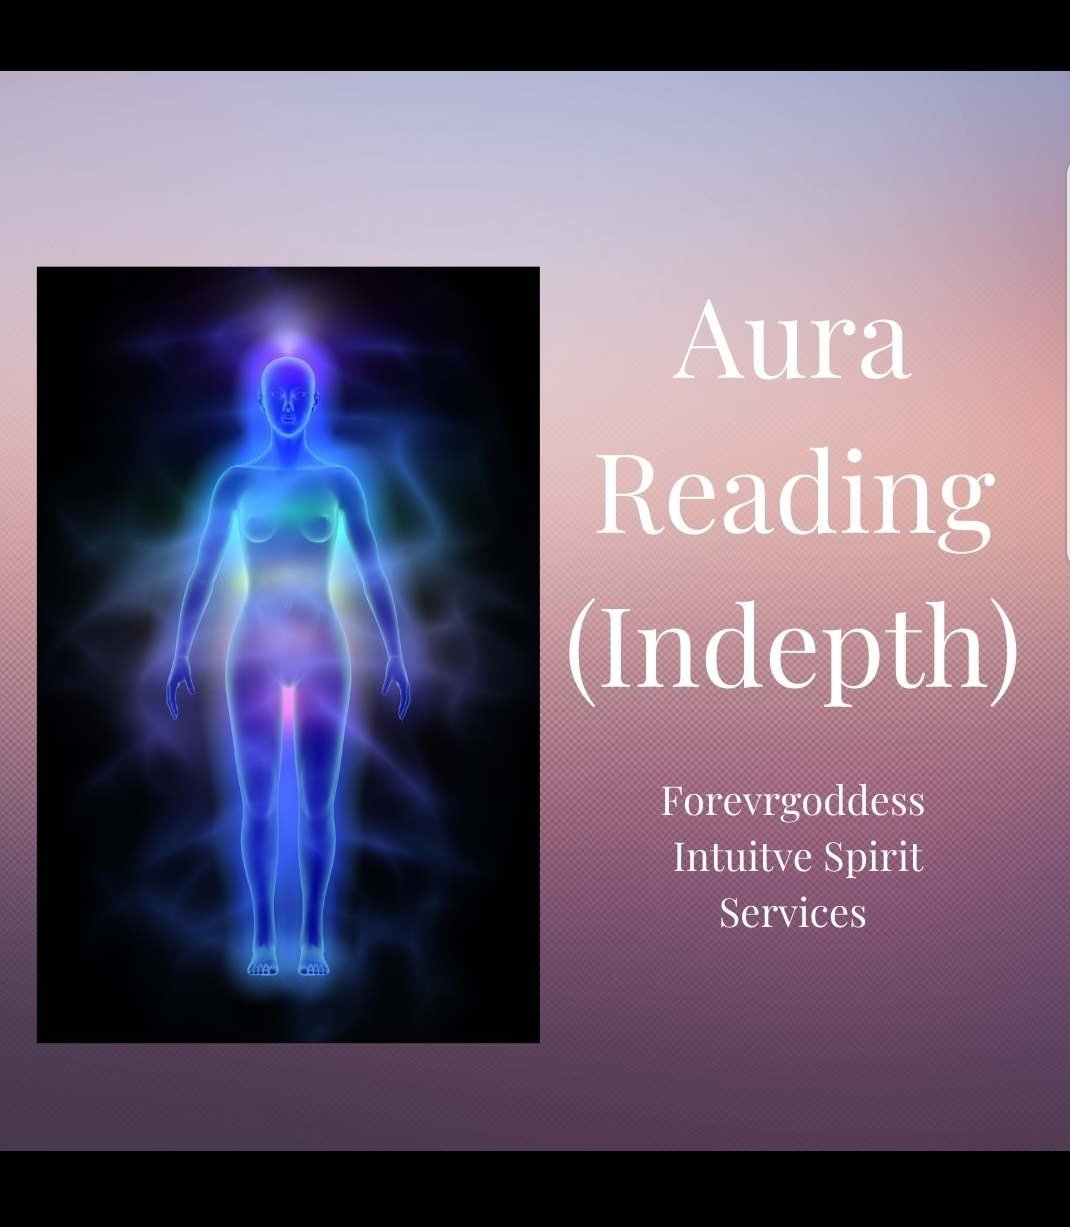 Aura reading (indepth) 2